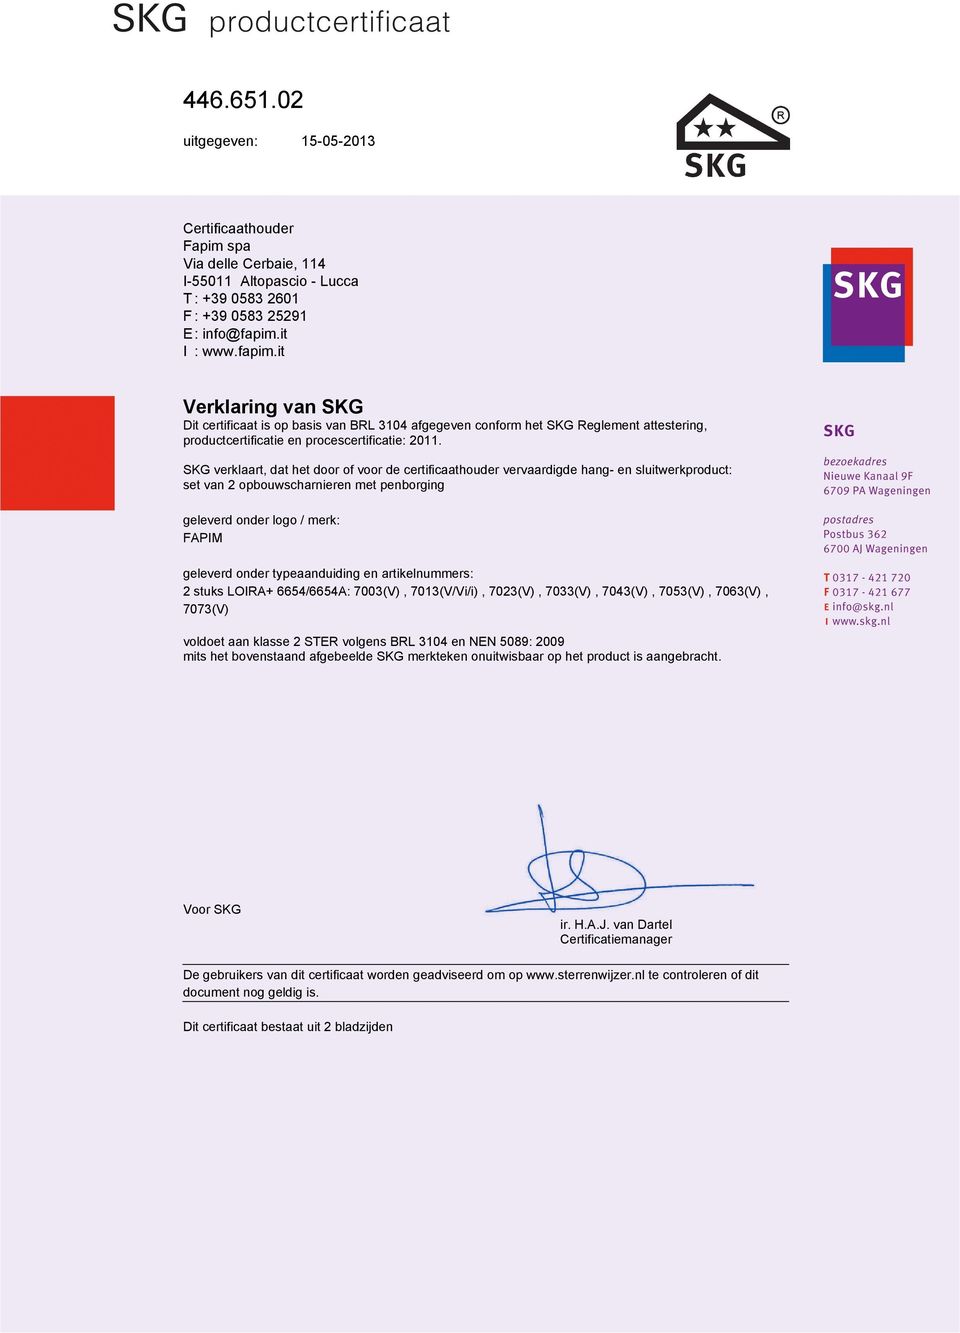 SKG verklaart, dat het door of voor de certificaathouder vervaardigde hang- en sluitwerkproduct: set van 2 opbouwscharnieren met penborging geleverd onder logo / merk: FAPIM geleverd onder